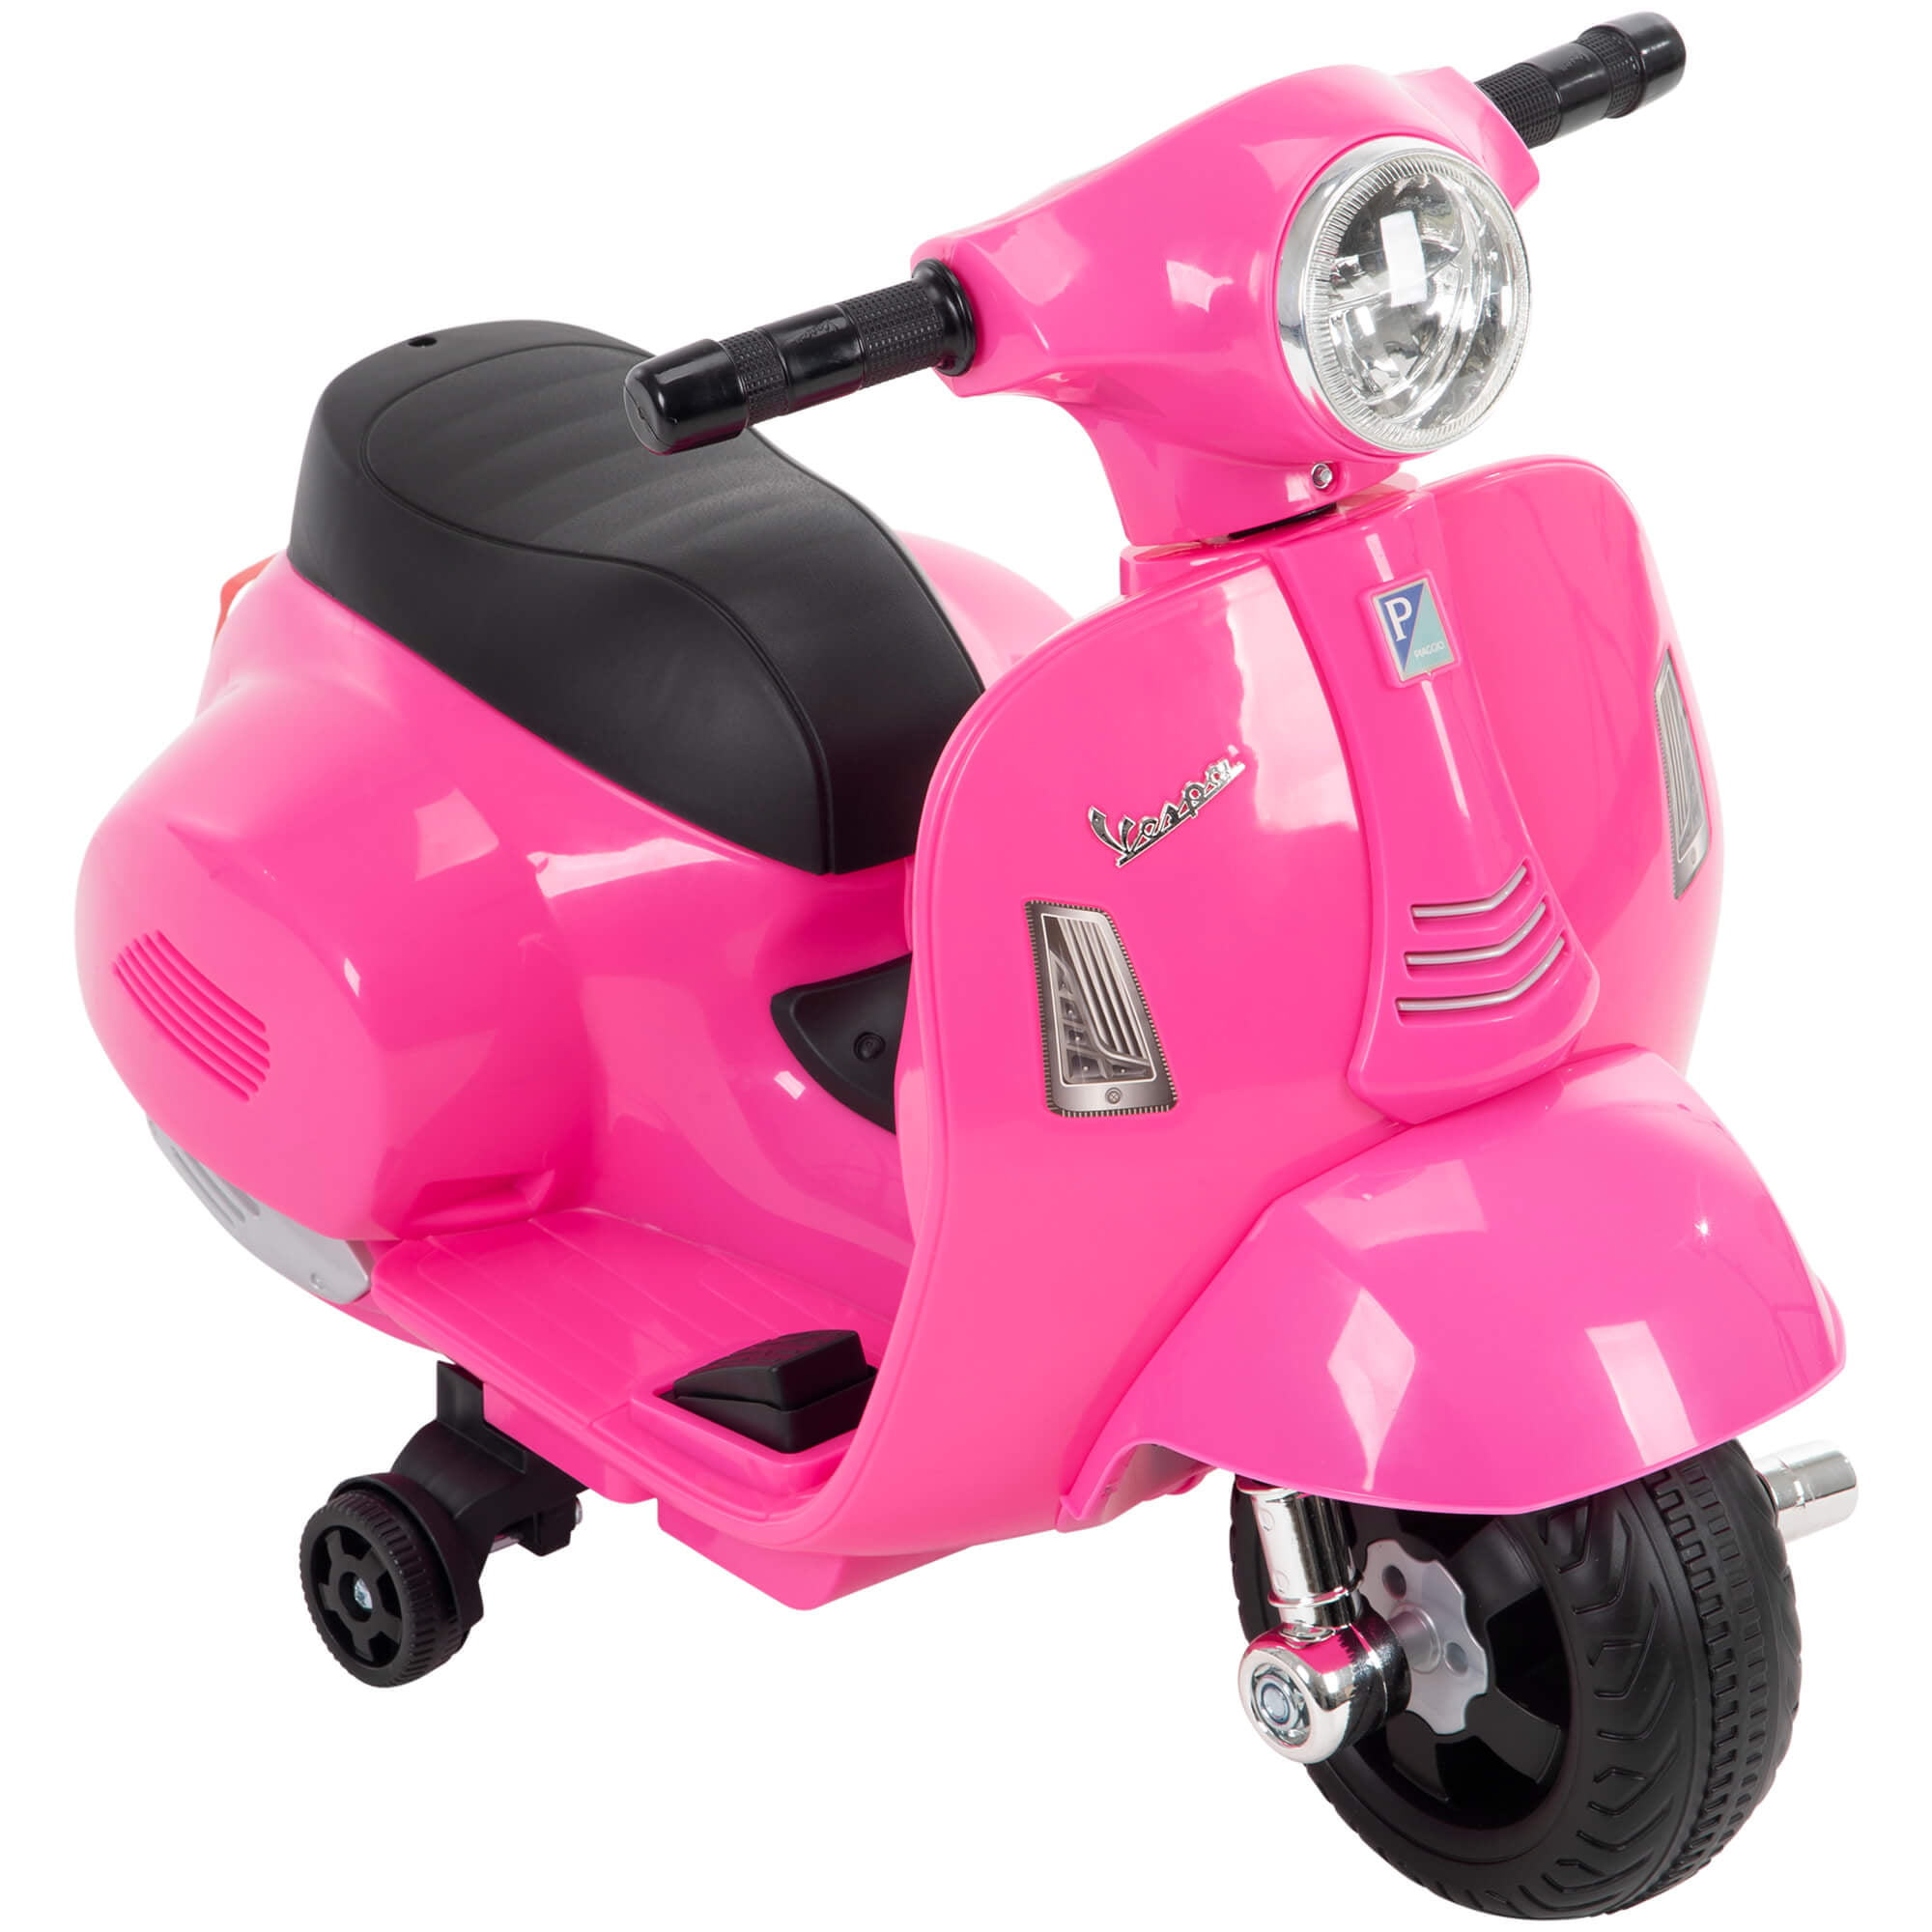 6V Vespa Scooter for Pink - Walmart.com